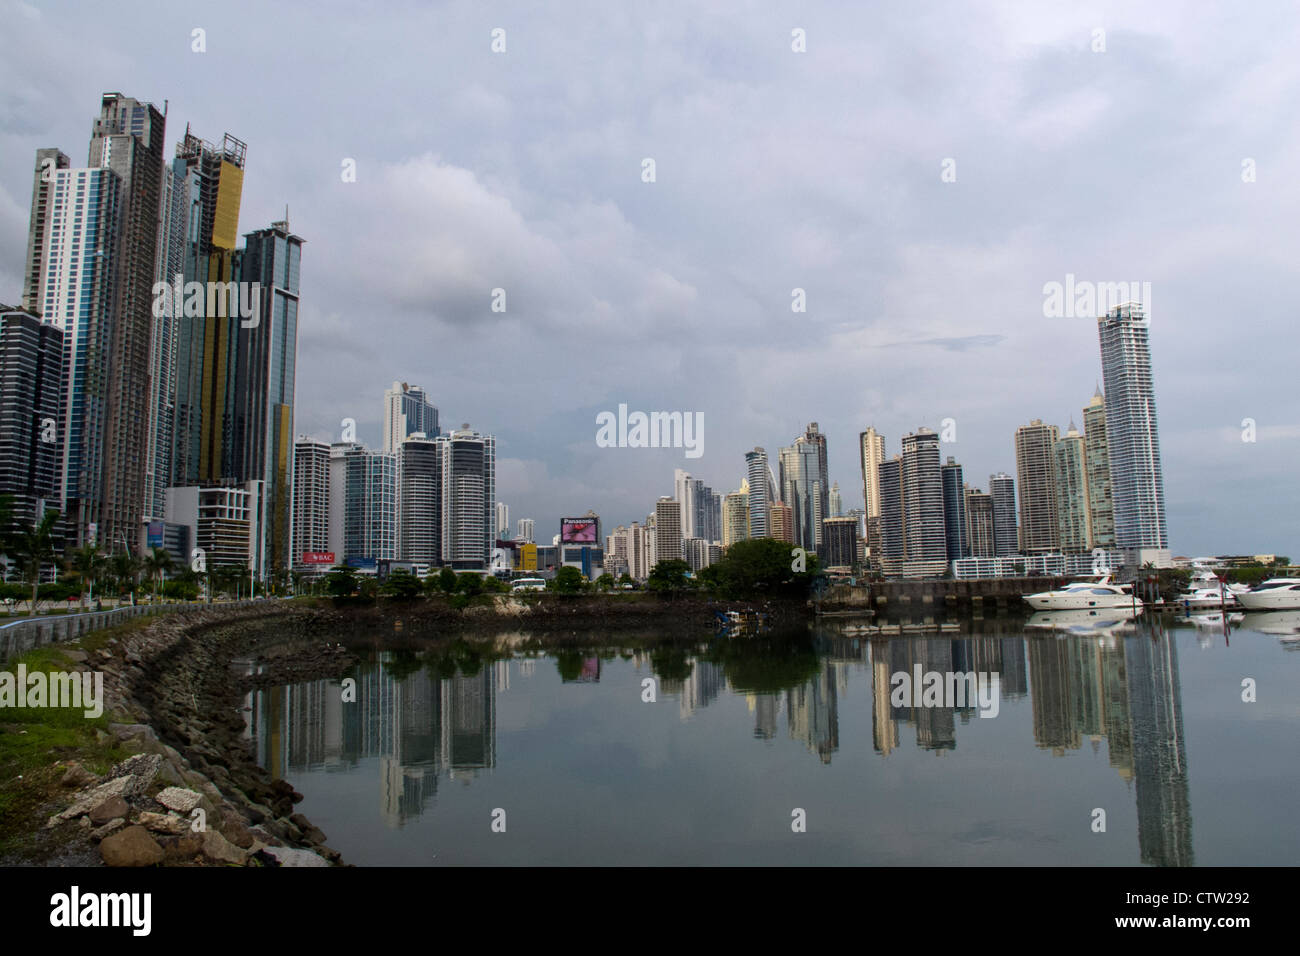 Gesamtansicht der Wolkenkratzer / Skyline mit Bucht / Wasser, Panama City, Panama Stockfoto